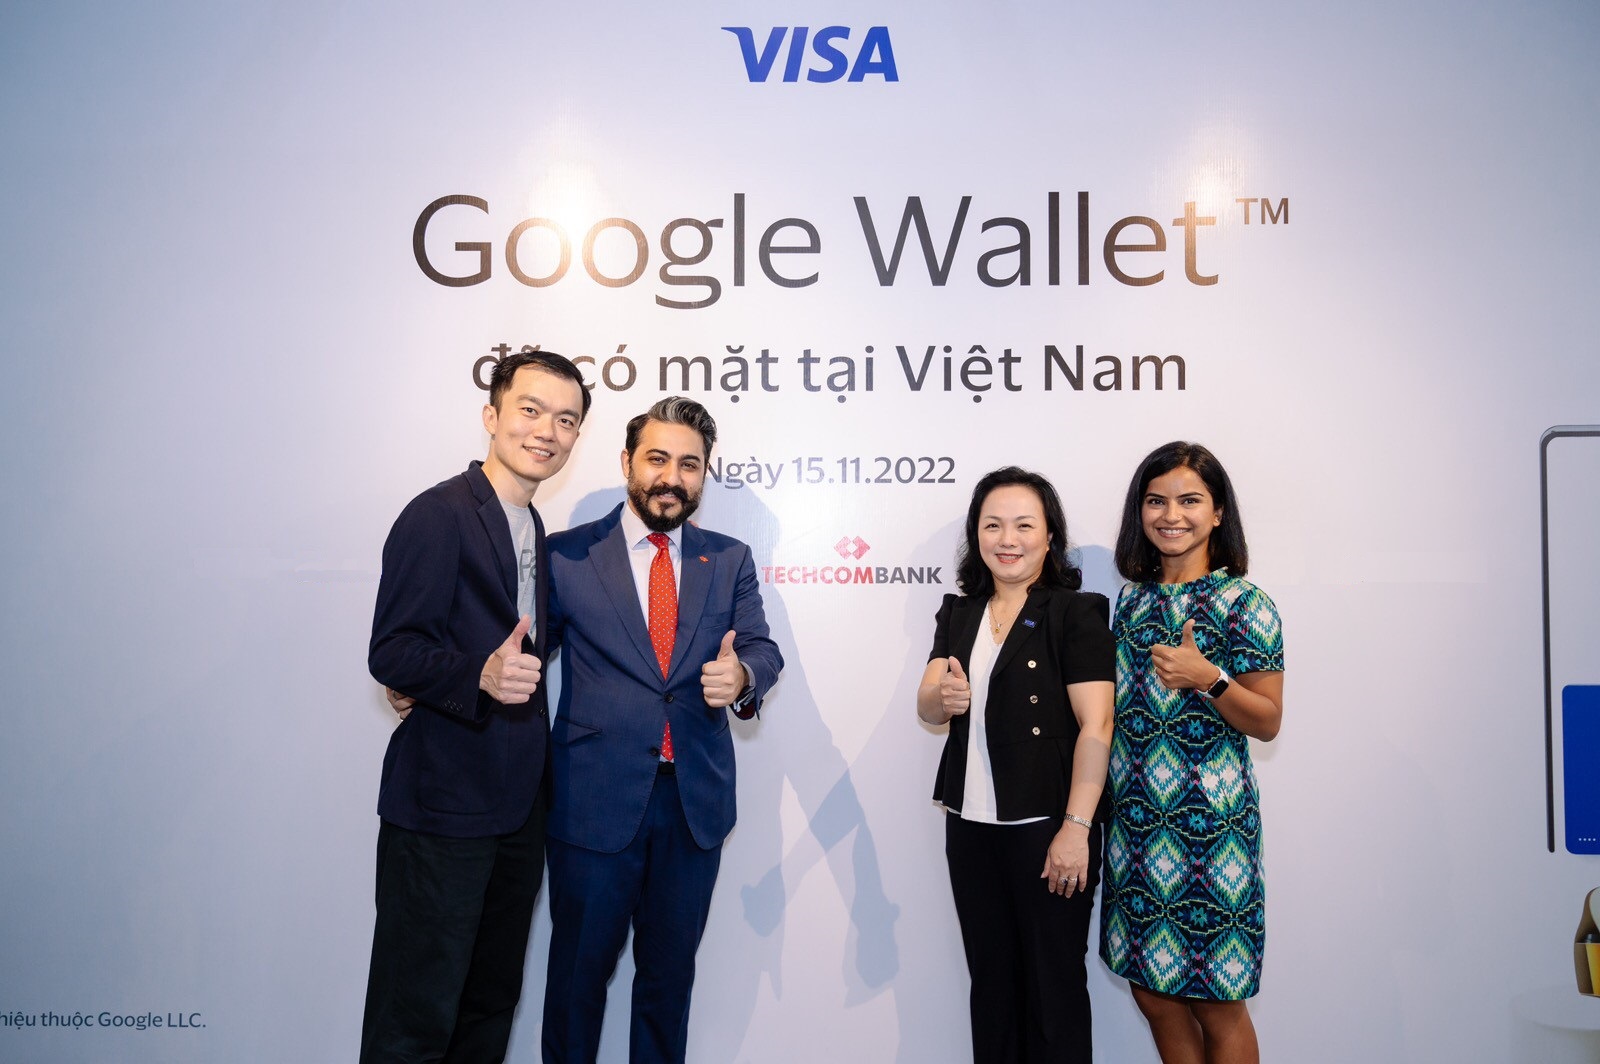 Tín đồ thanh toán số nhận ngay 100k vào thẻ tín dụng Techcombank Visa khi giao dịch tại Google Pay - Ảnh 3.